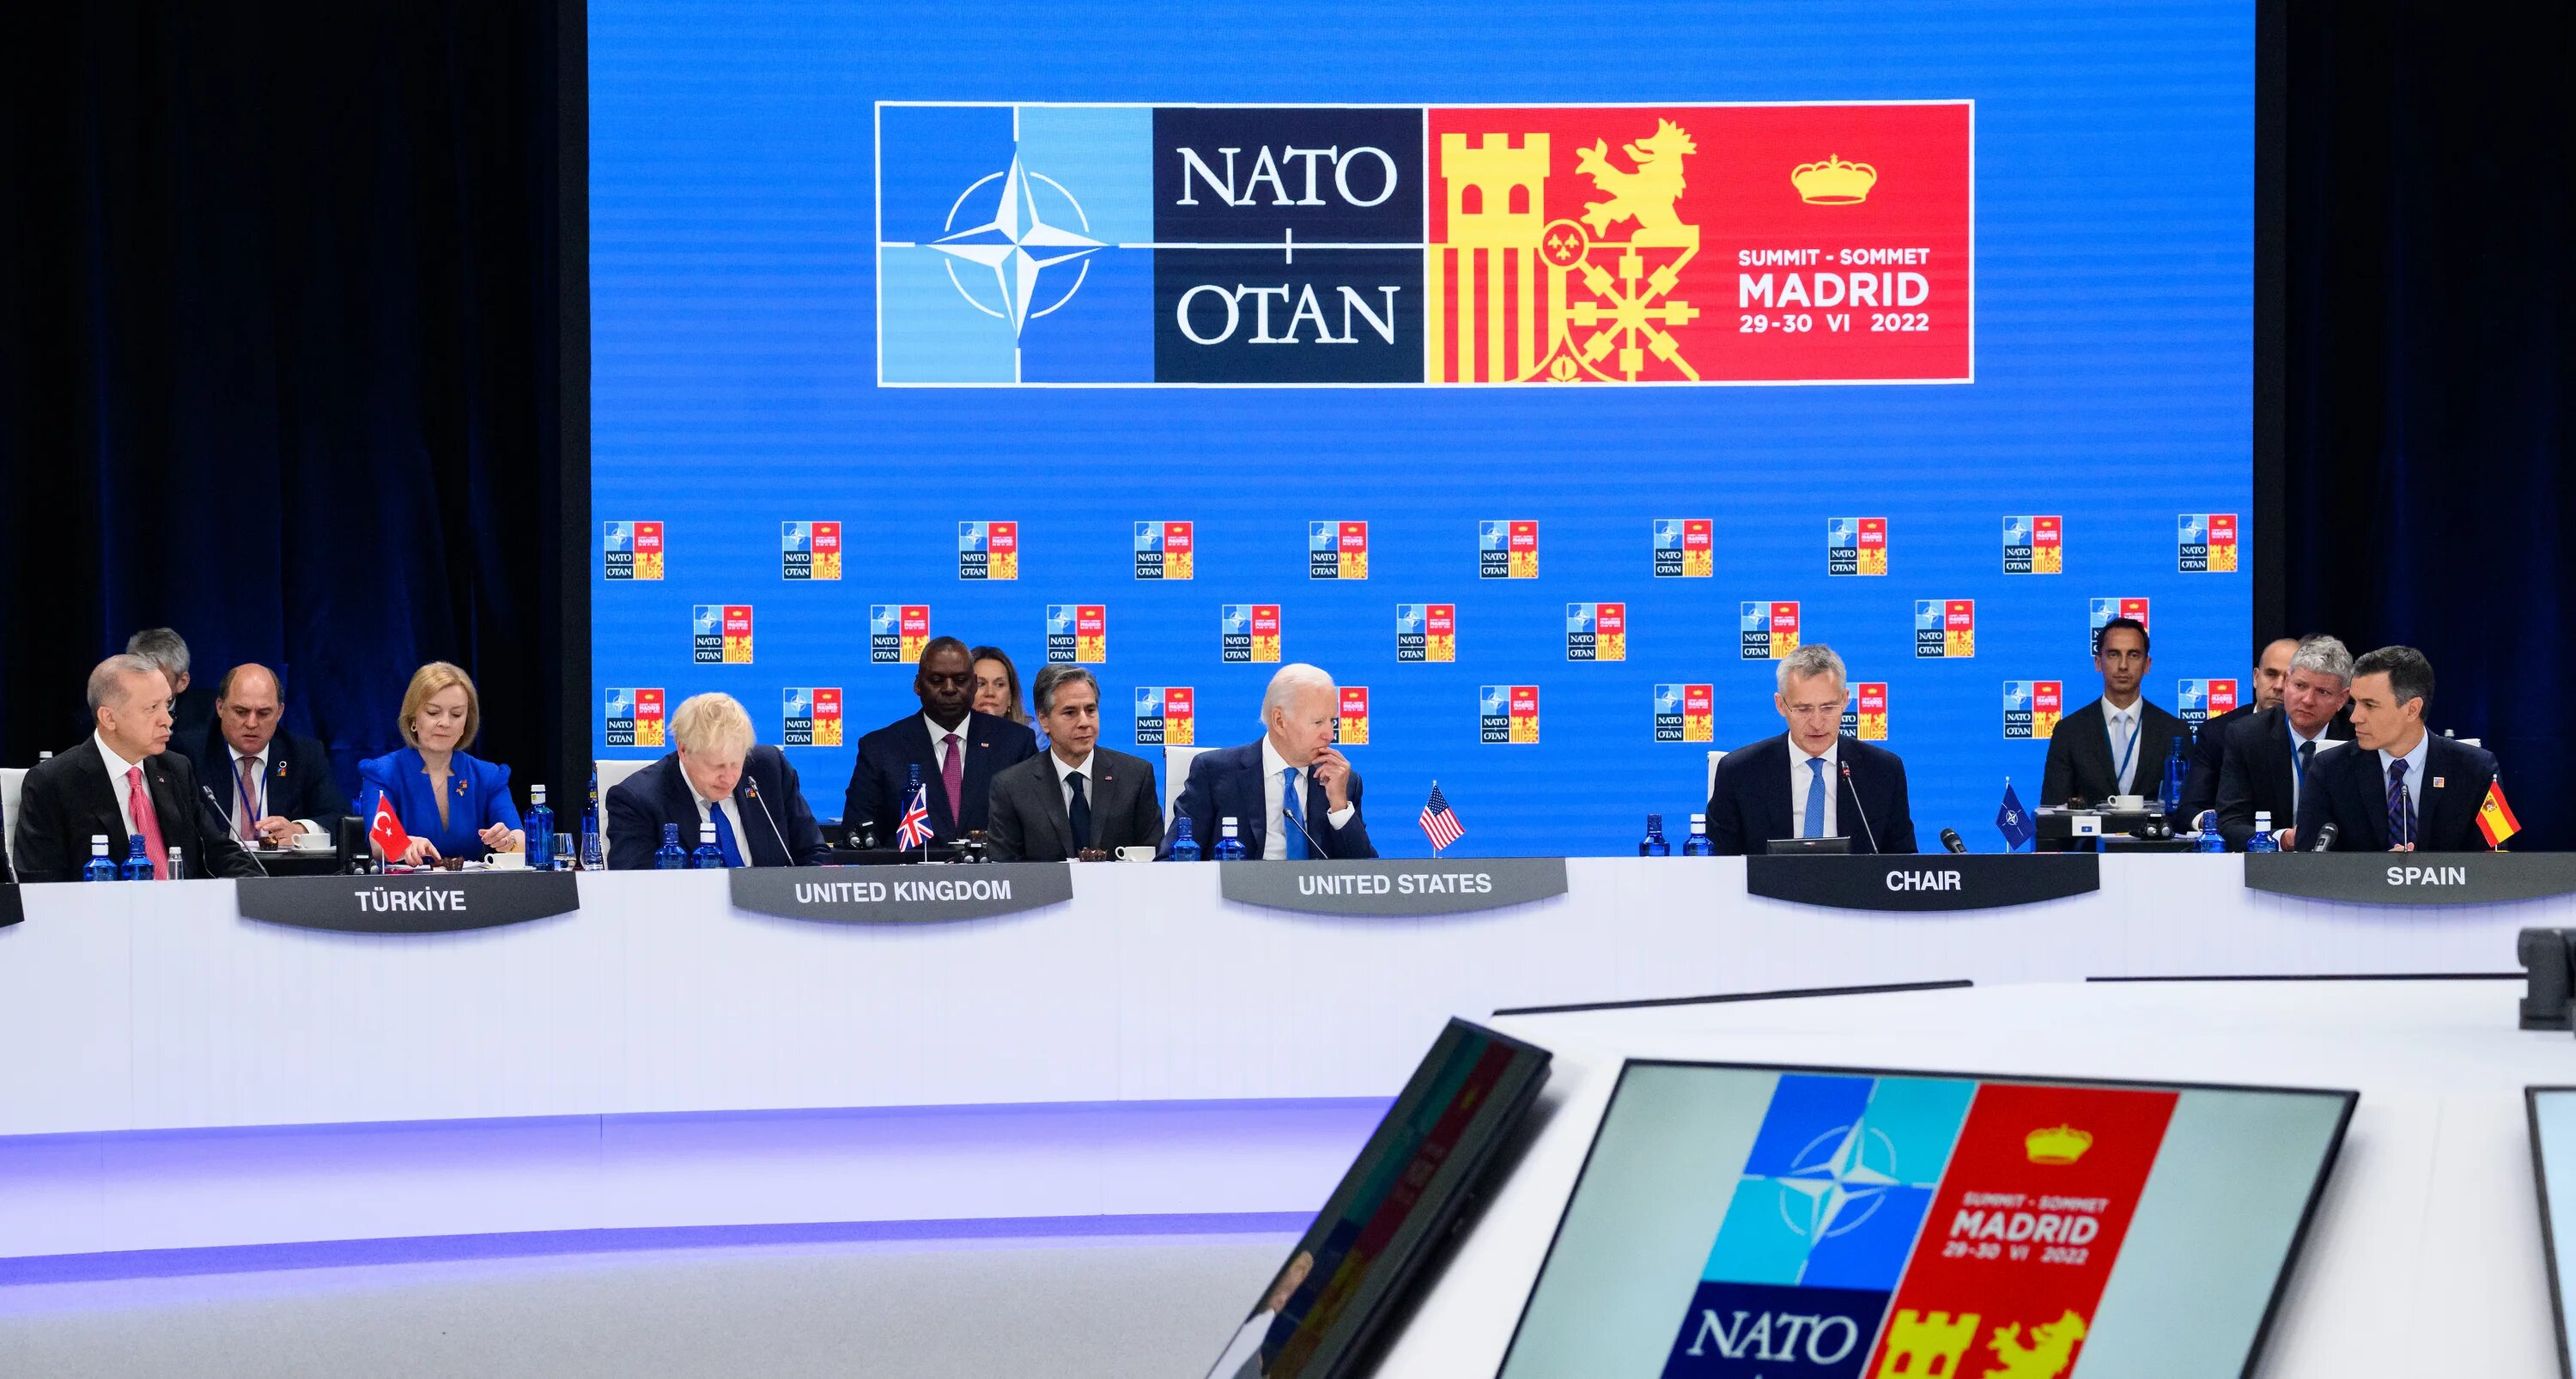 Мадридский саммит НАТО 2022. Пражский саммит НАТО 2002. Саммит Россия НАТО 2022. Мадридский саммит НАТО В 2022 году.